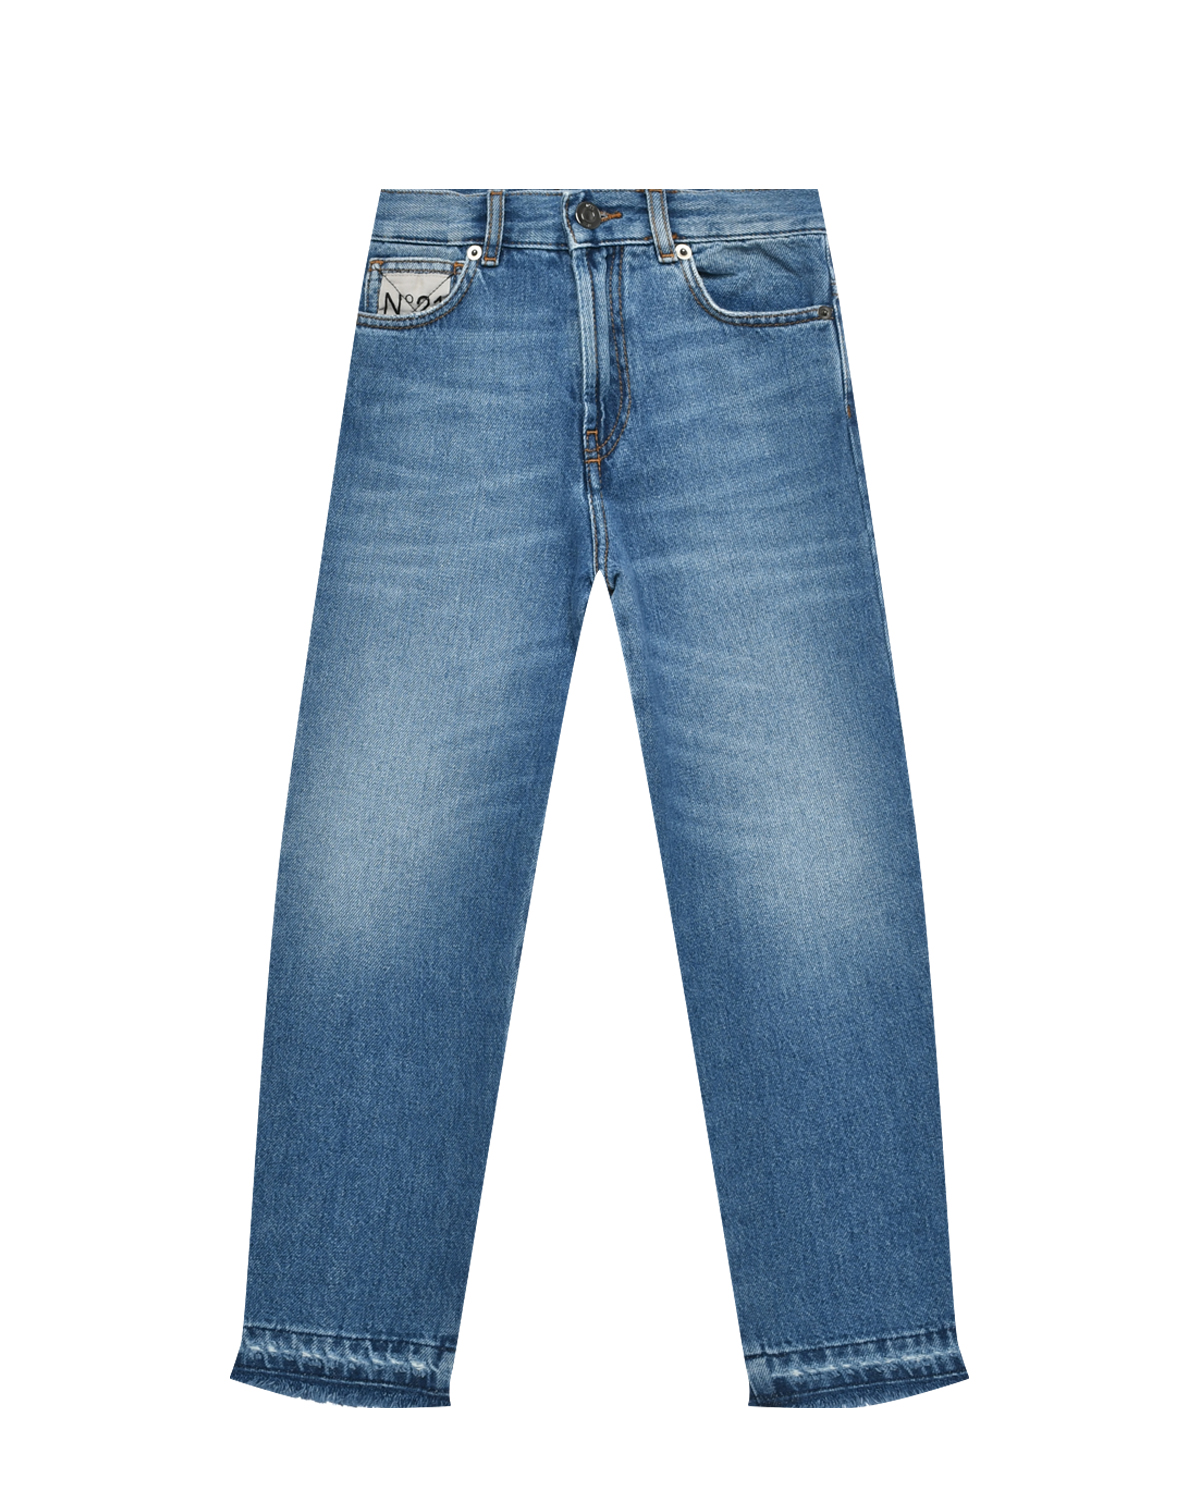 Выбеленные джинсы, синие No. 21, размер 164, цвет синий